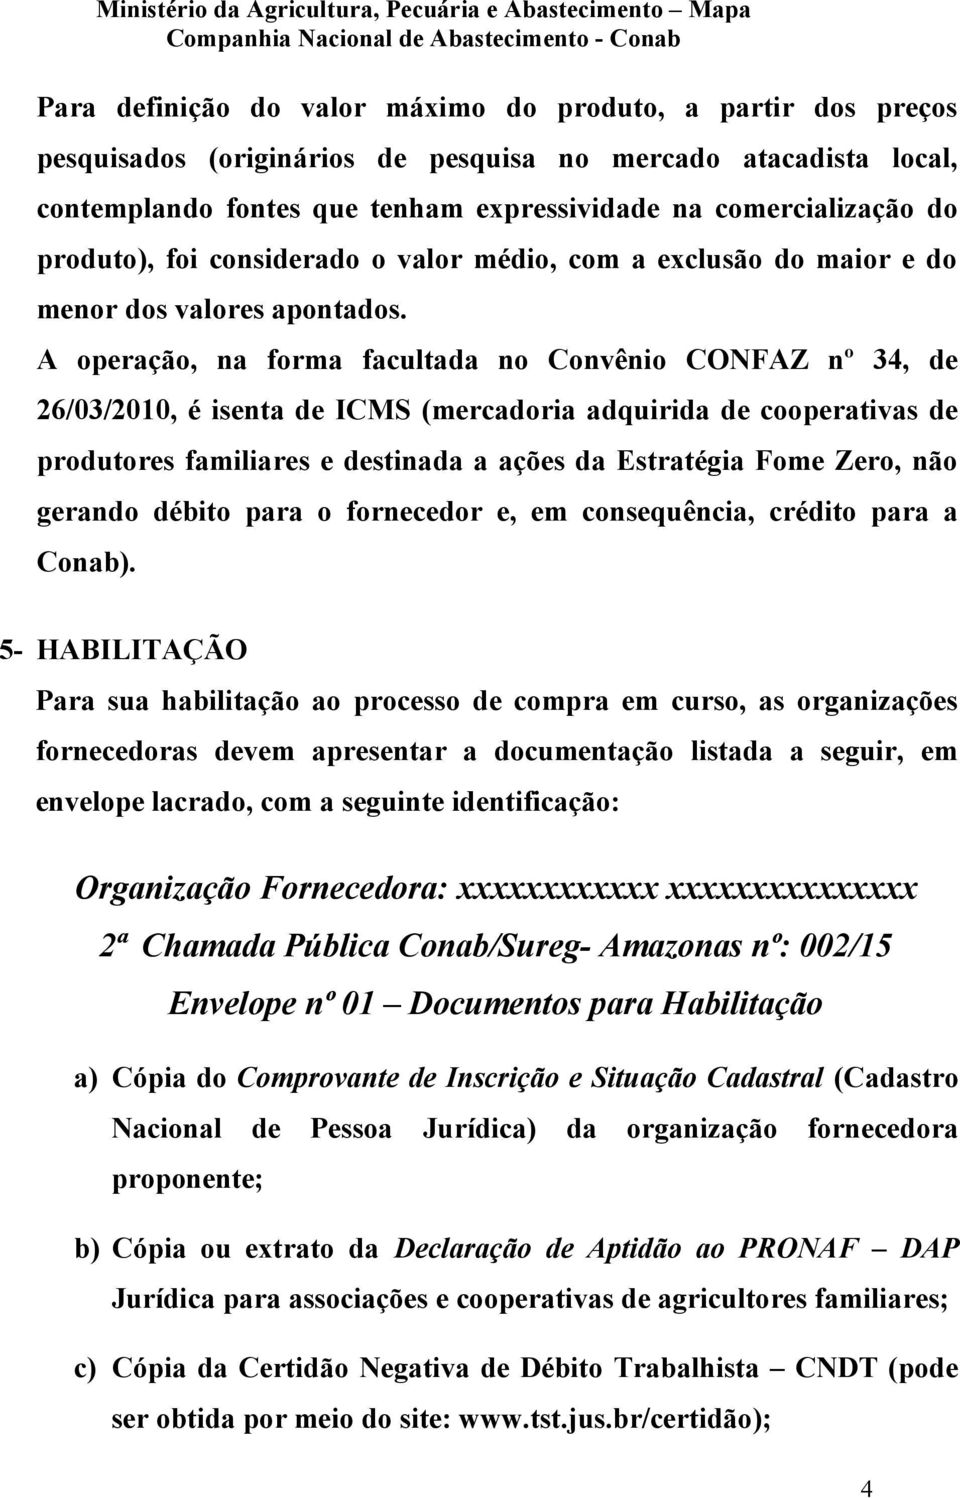 A operação, na forma facultada no Convênio CONFAZ nº 34, de 26/03/2010, é isenta de ICMS (mercadoria adquirida de cooperativas de produtores familiares e destinada a ações da Estratégia Fome Zero,